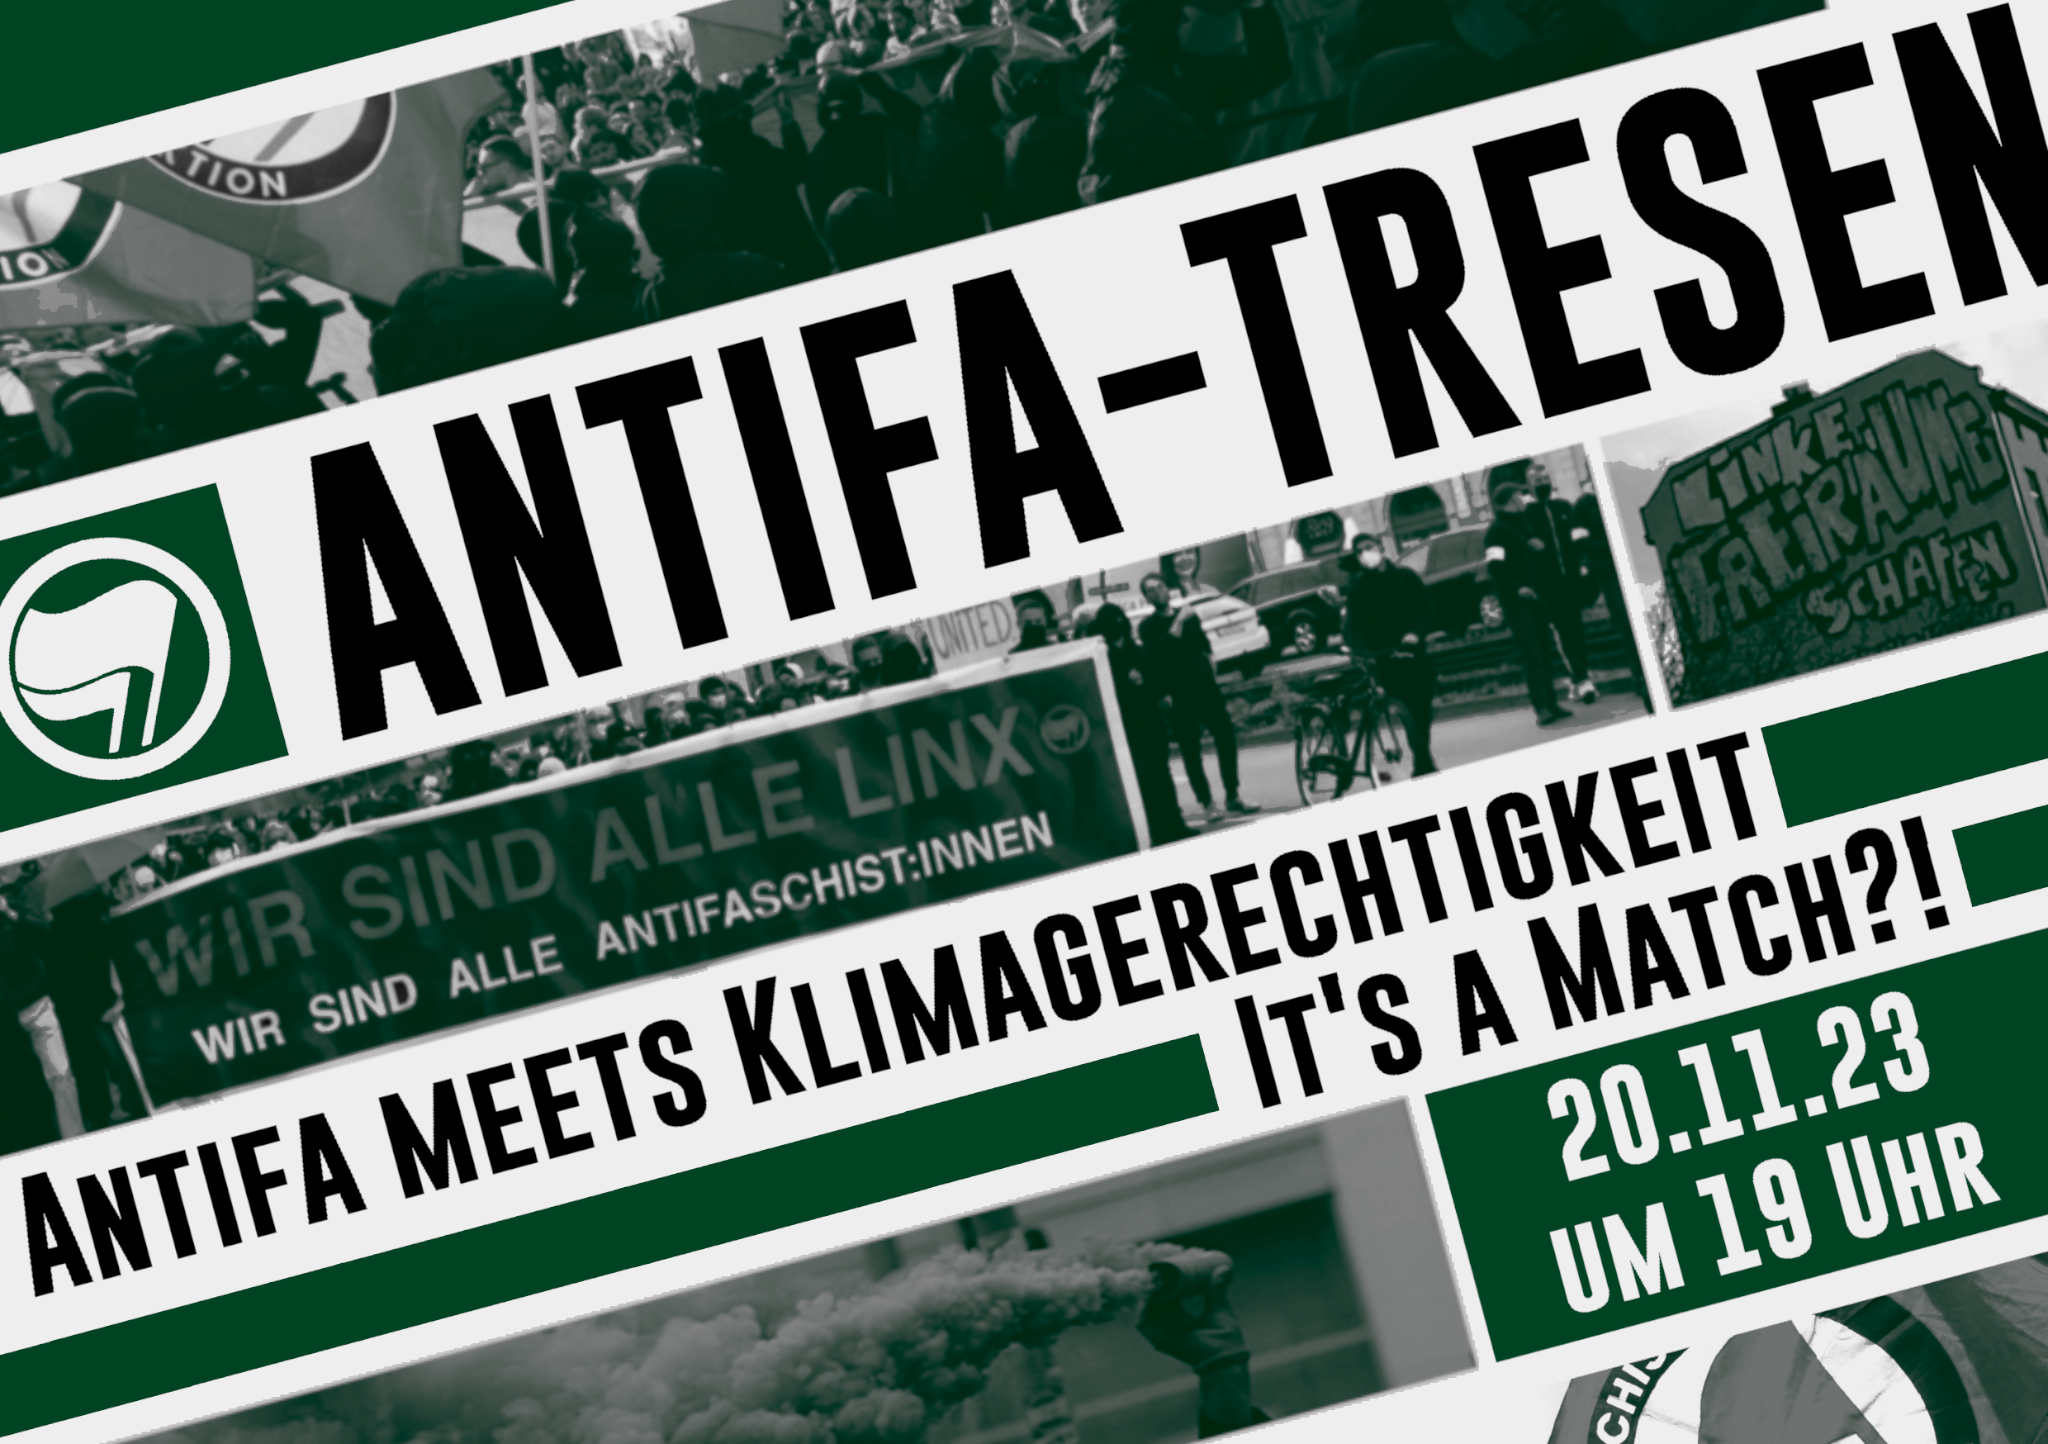 Antifa meets Klimagerechtigkeit - It's a Match?!